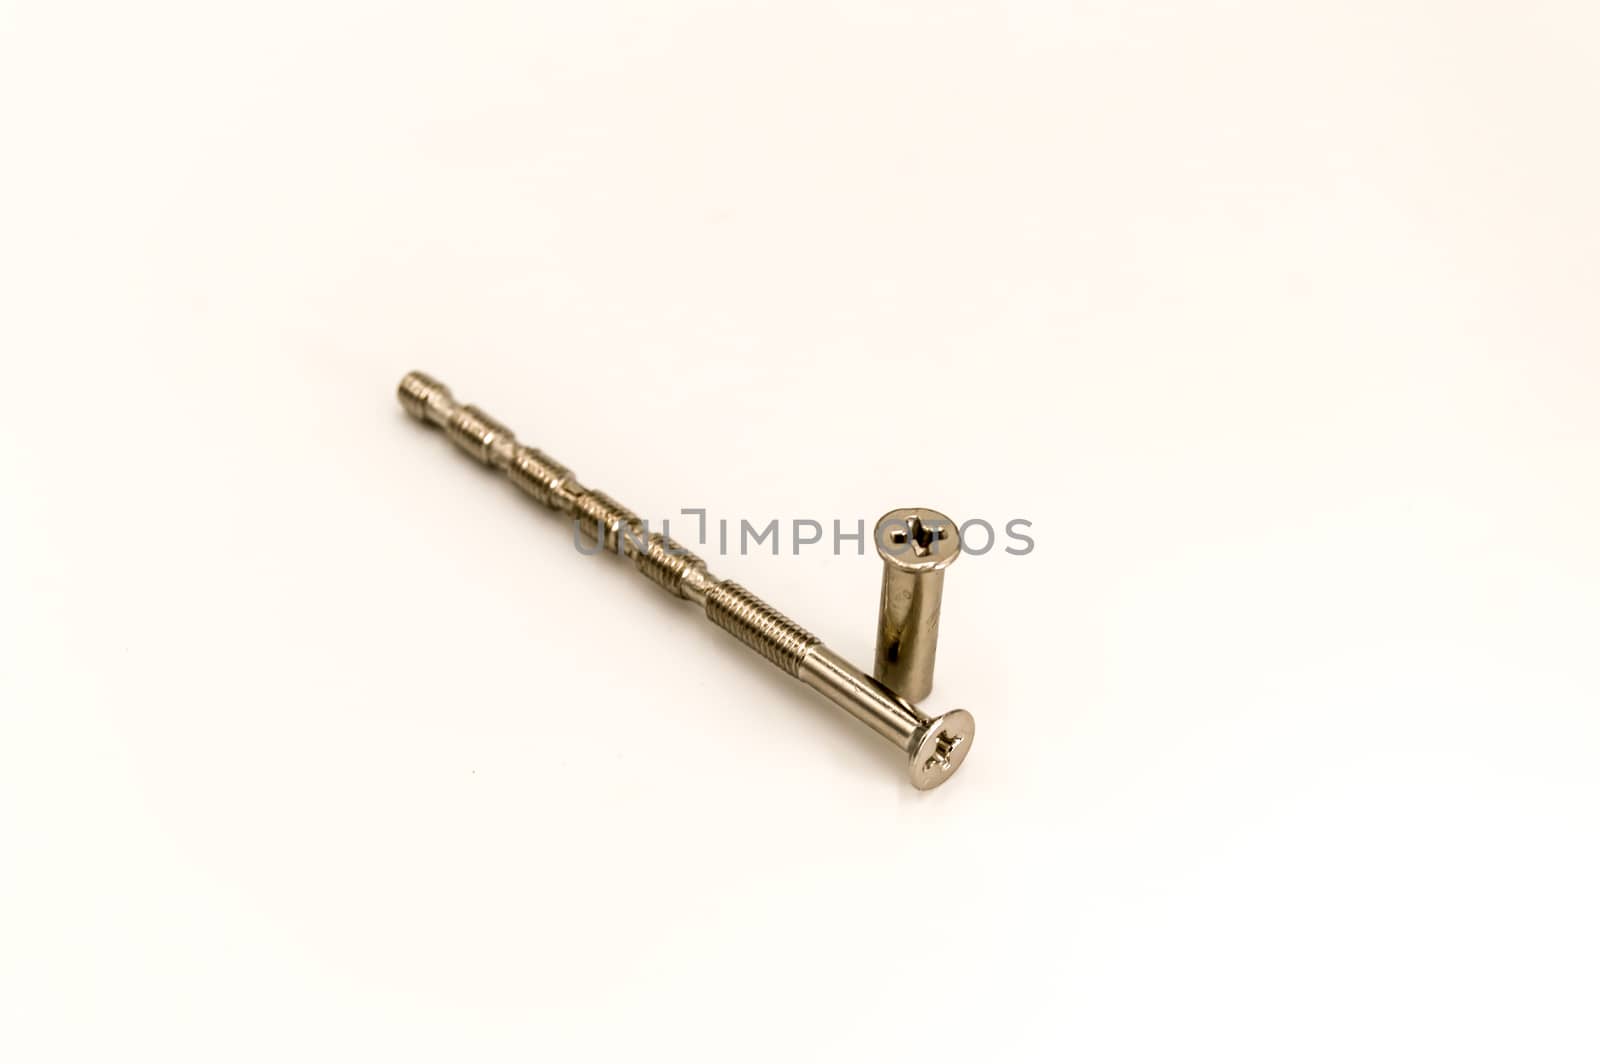 Screw and its metal door handle socket  by Philou1000